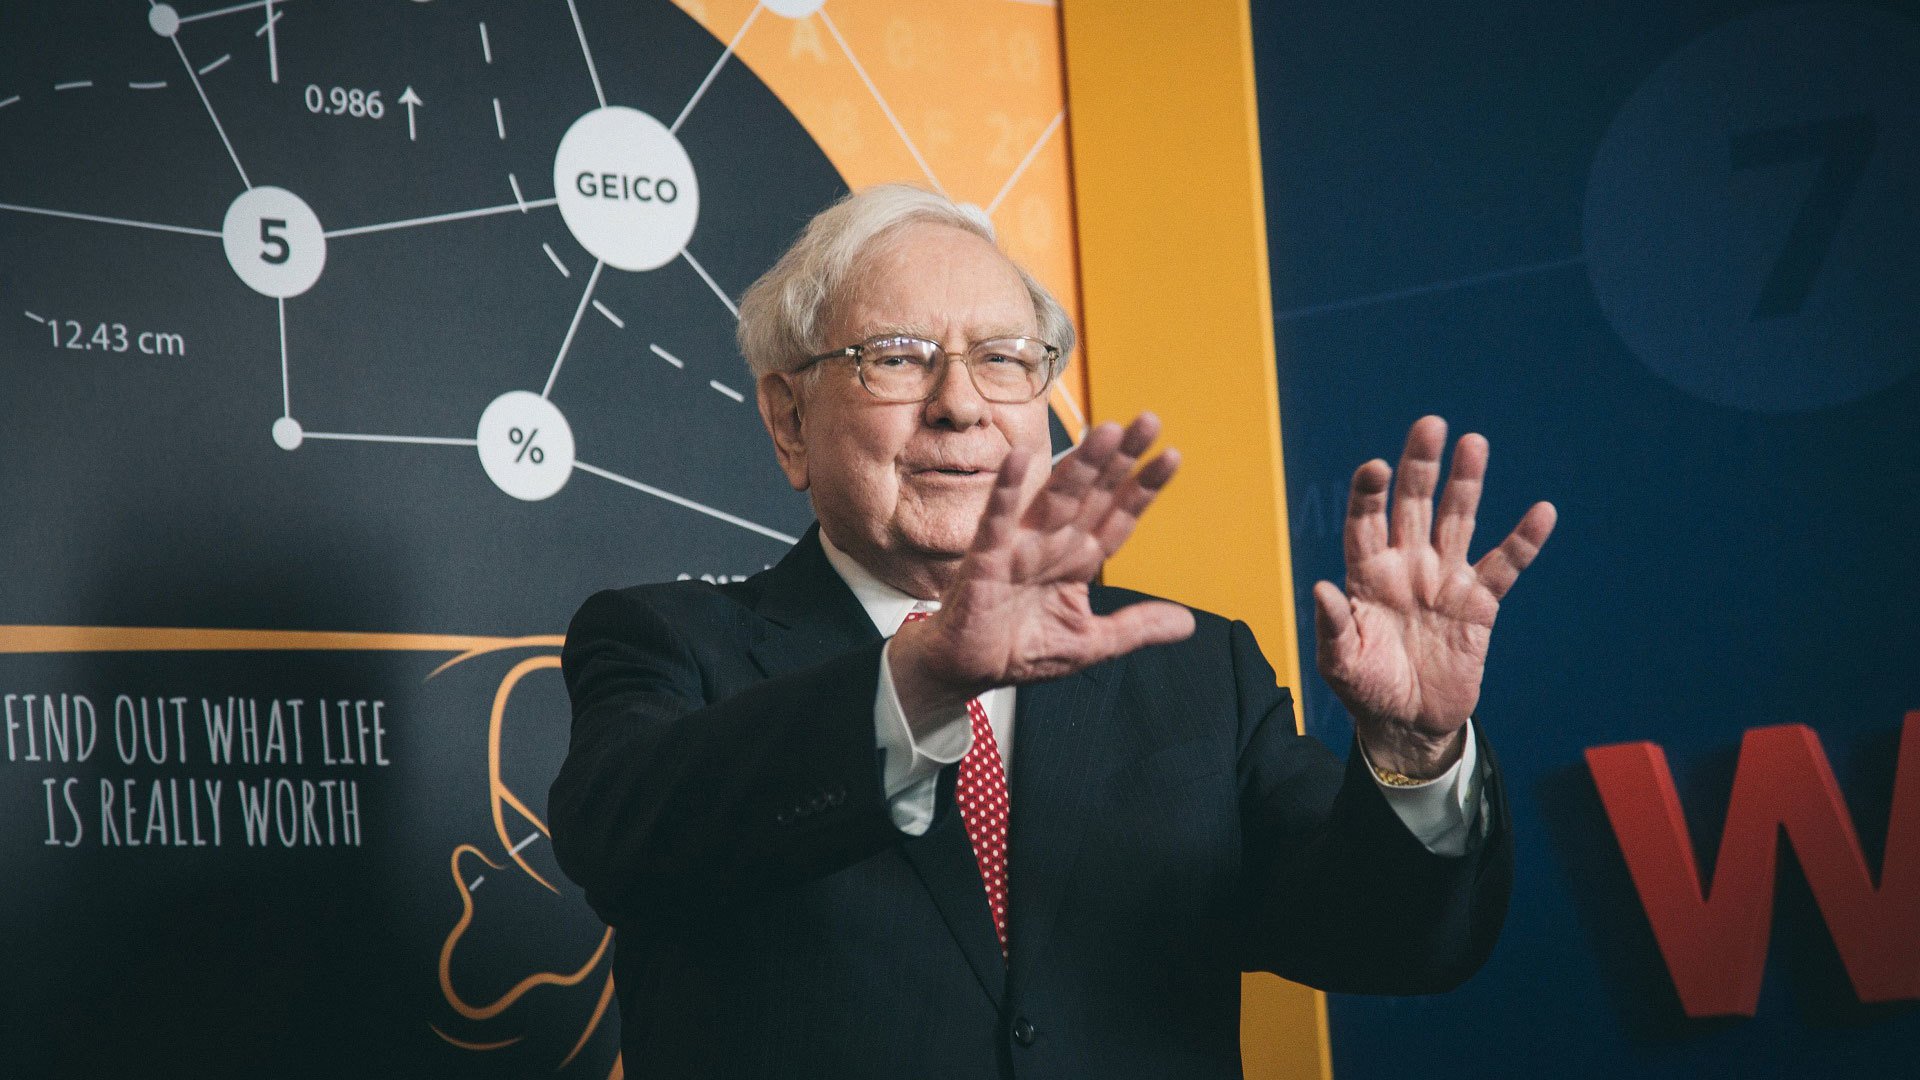 Becoming Warren Buffett